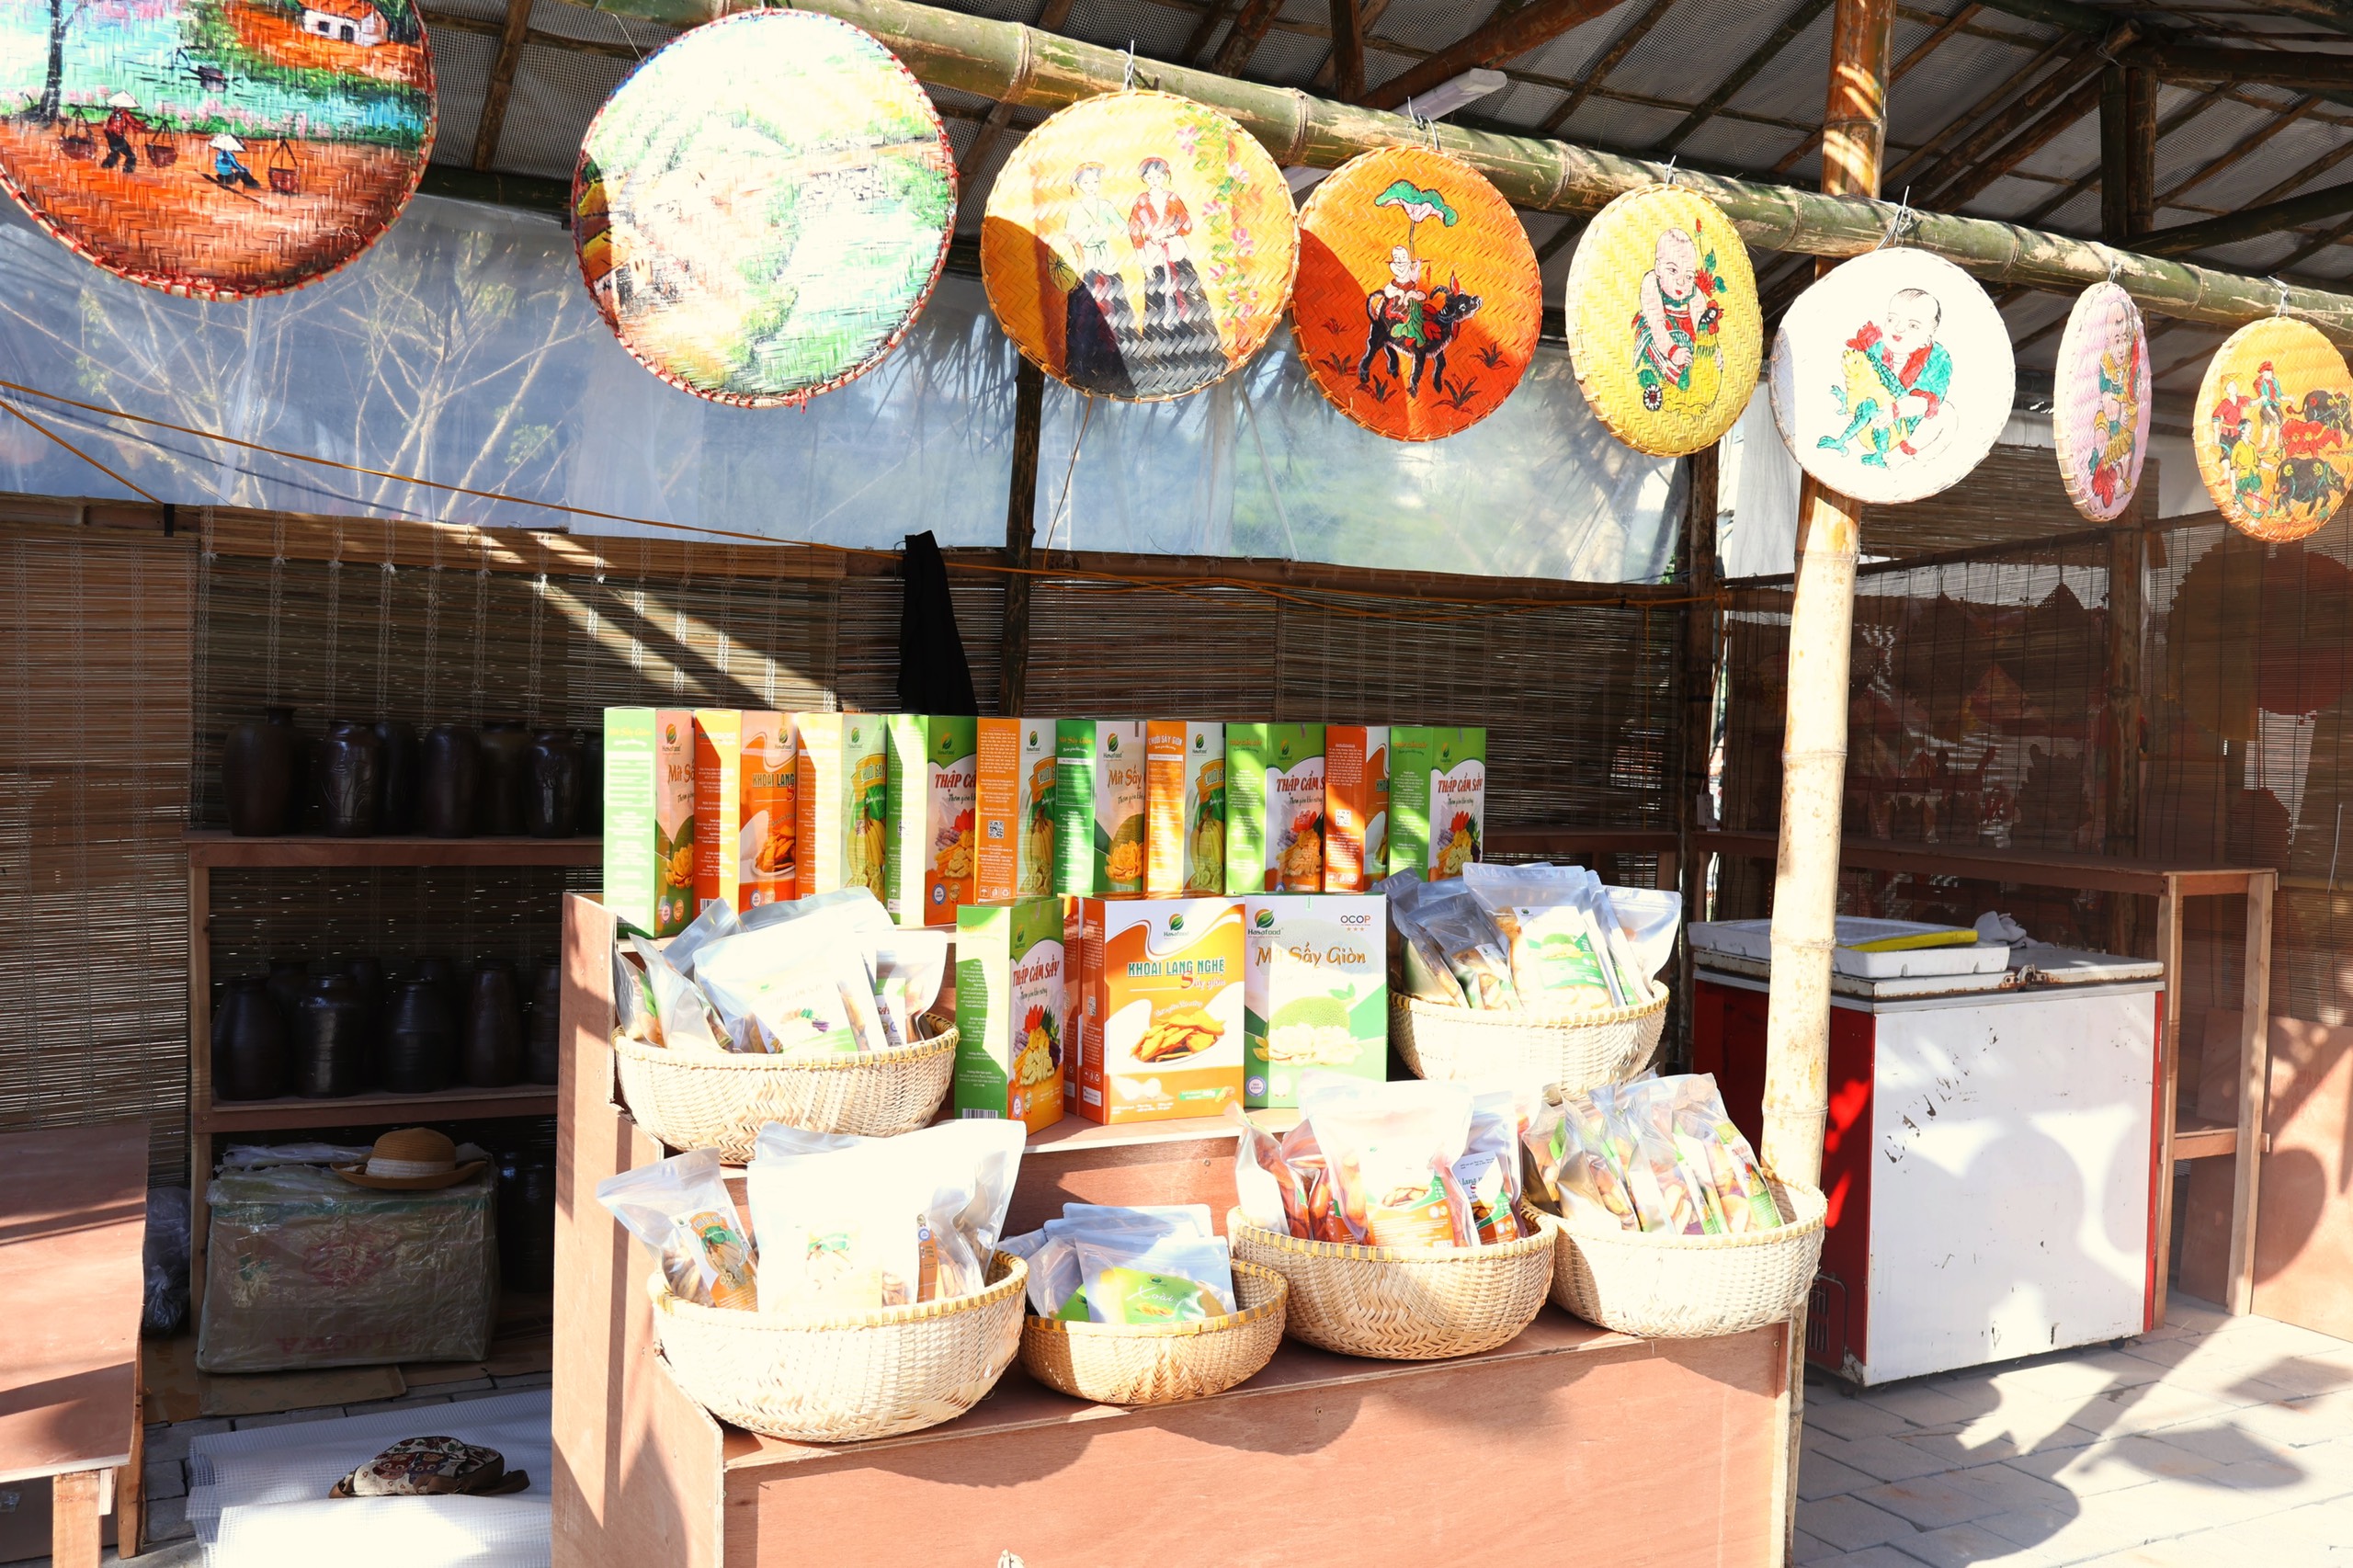 Lễ hội Tết xưa và phiên chợ quà tặng Ninh Bình: Nơi khách hàng lựa chọn sản phẩm chất lượng- Ảnh 3.